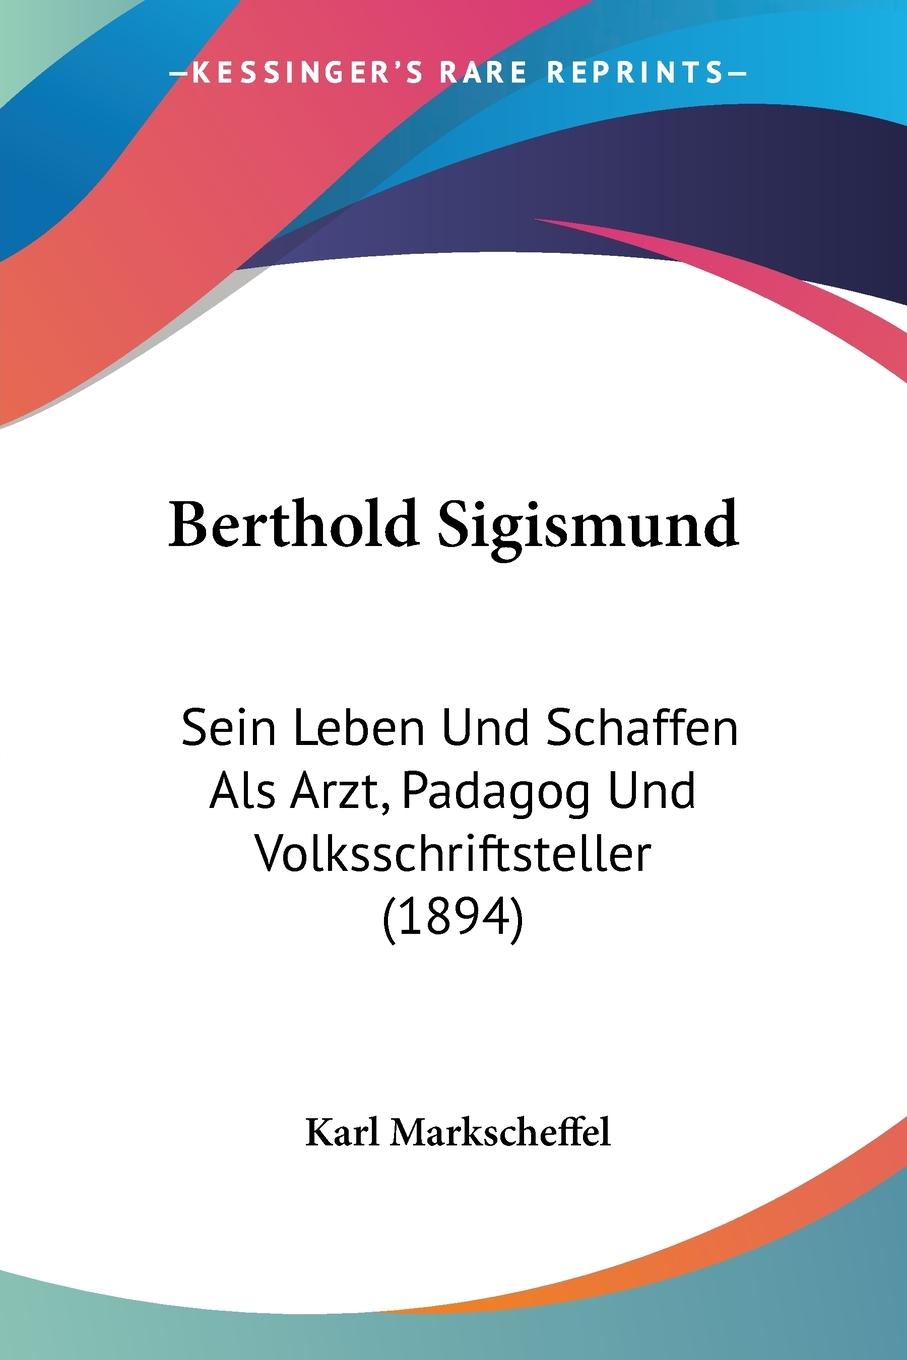 Berthold Sigismund - Markscheffel, Karl